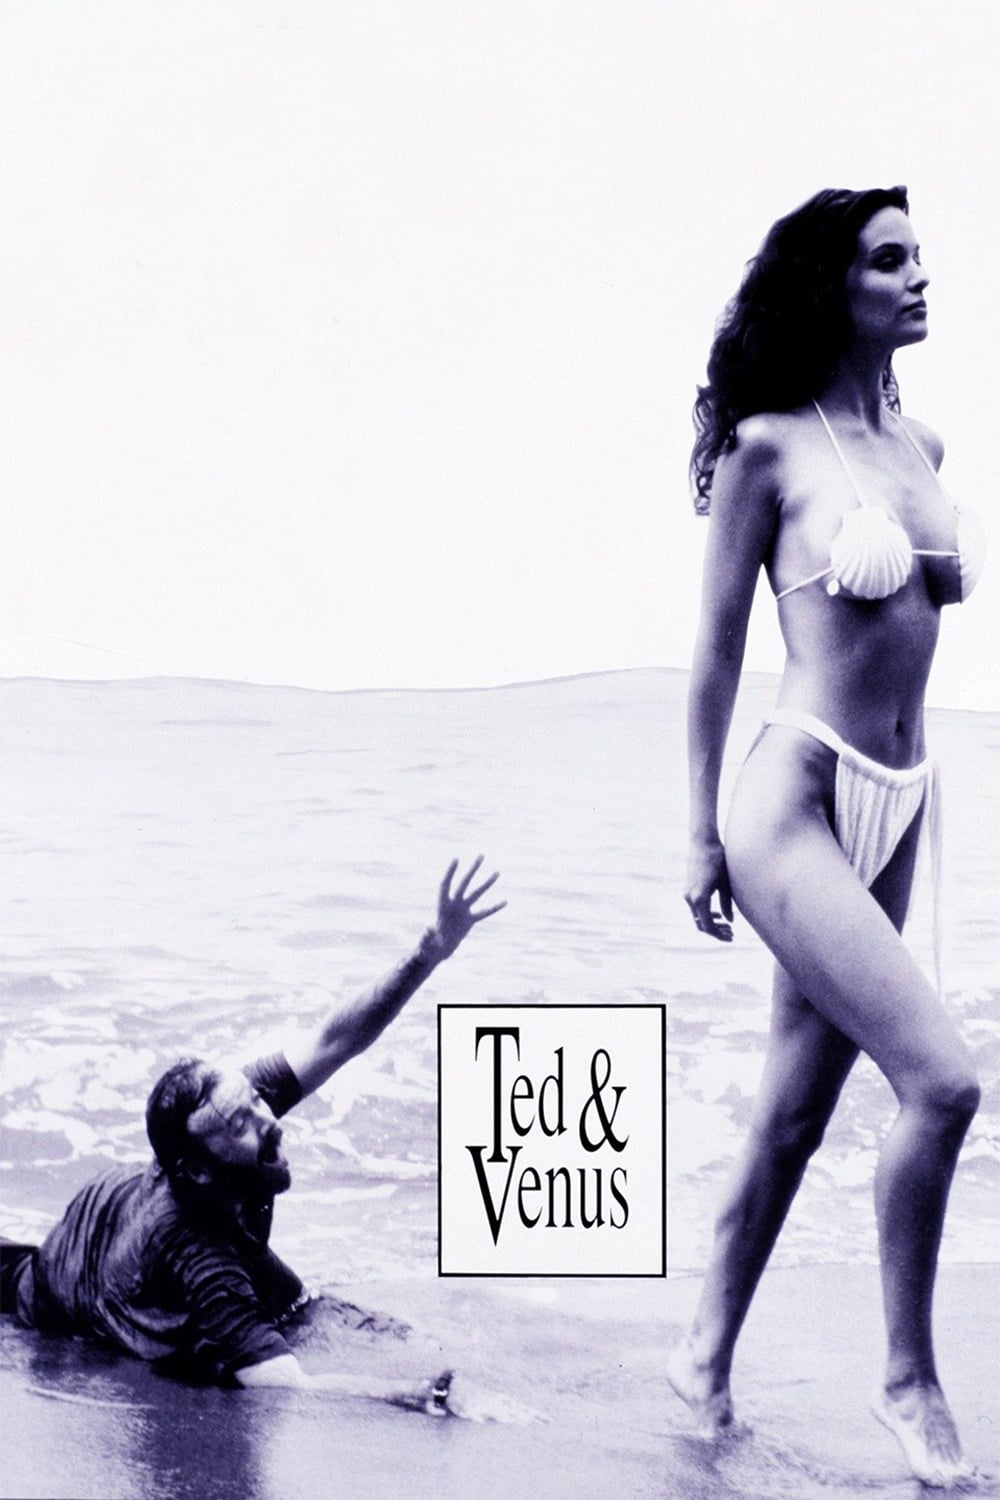 Plakat von "Ted & Venus"